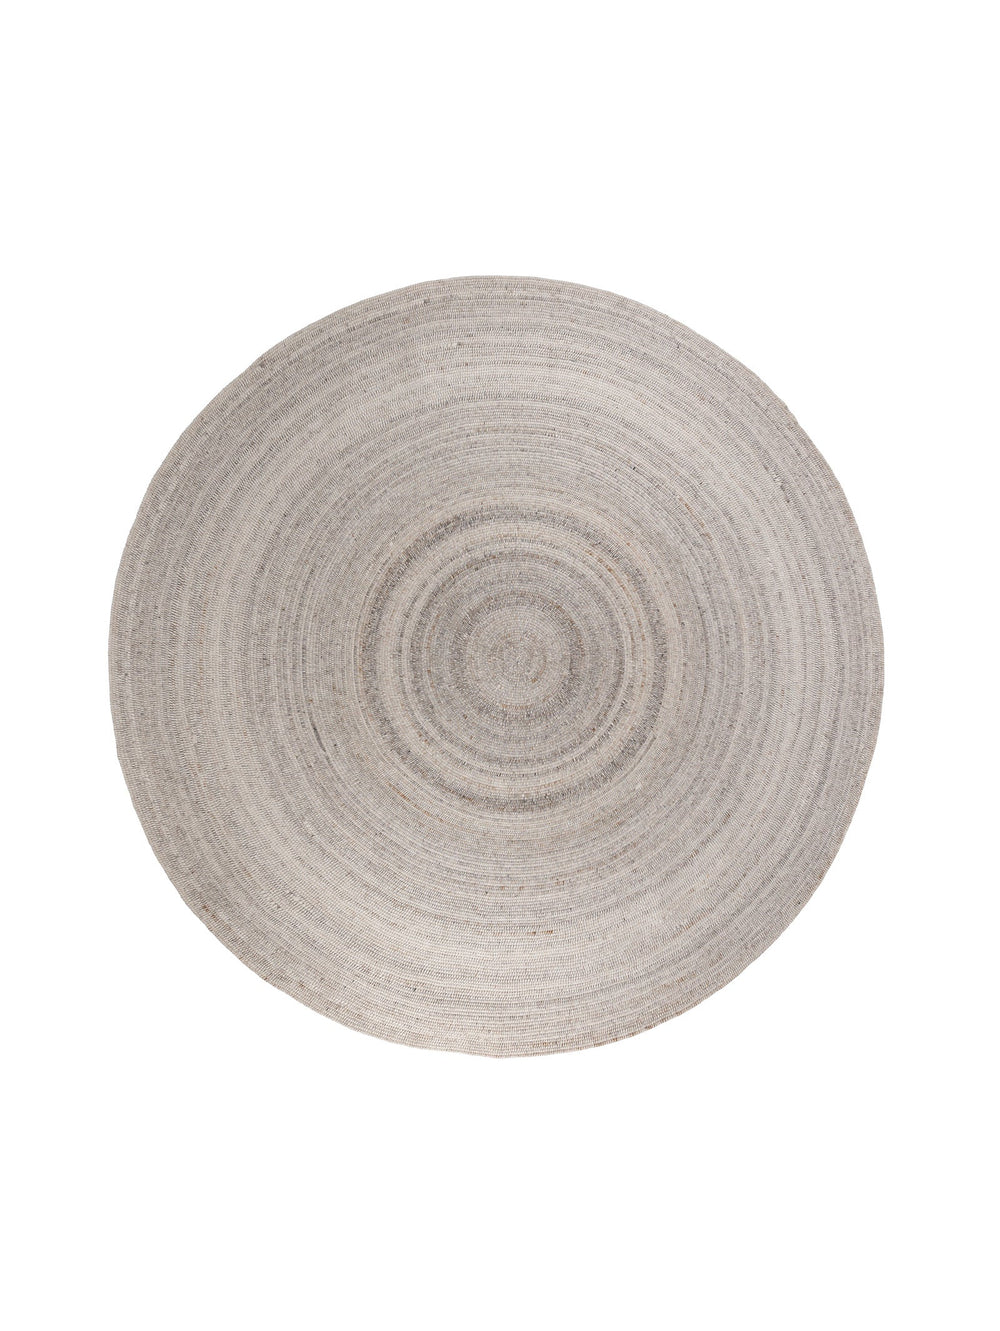 Spiral Round Rug in Sandcastle - Round Rug- Hertex Haus Online - badge_fully_outdoor